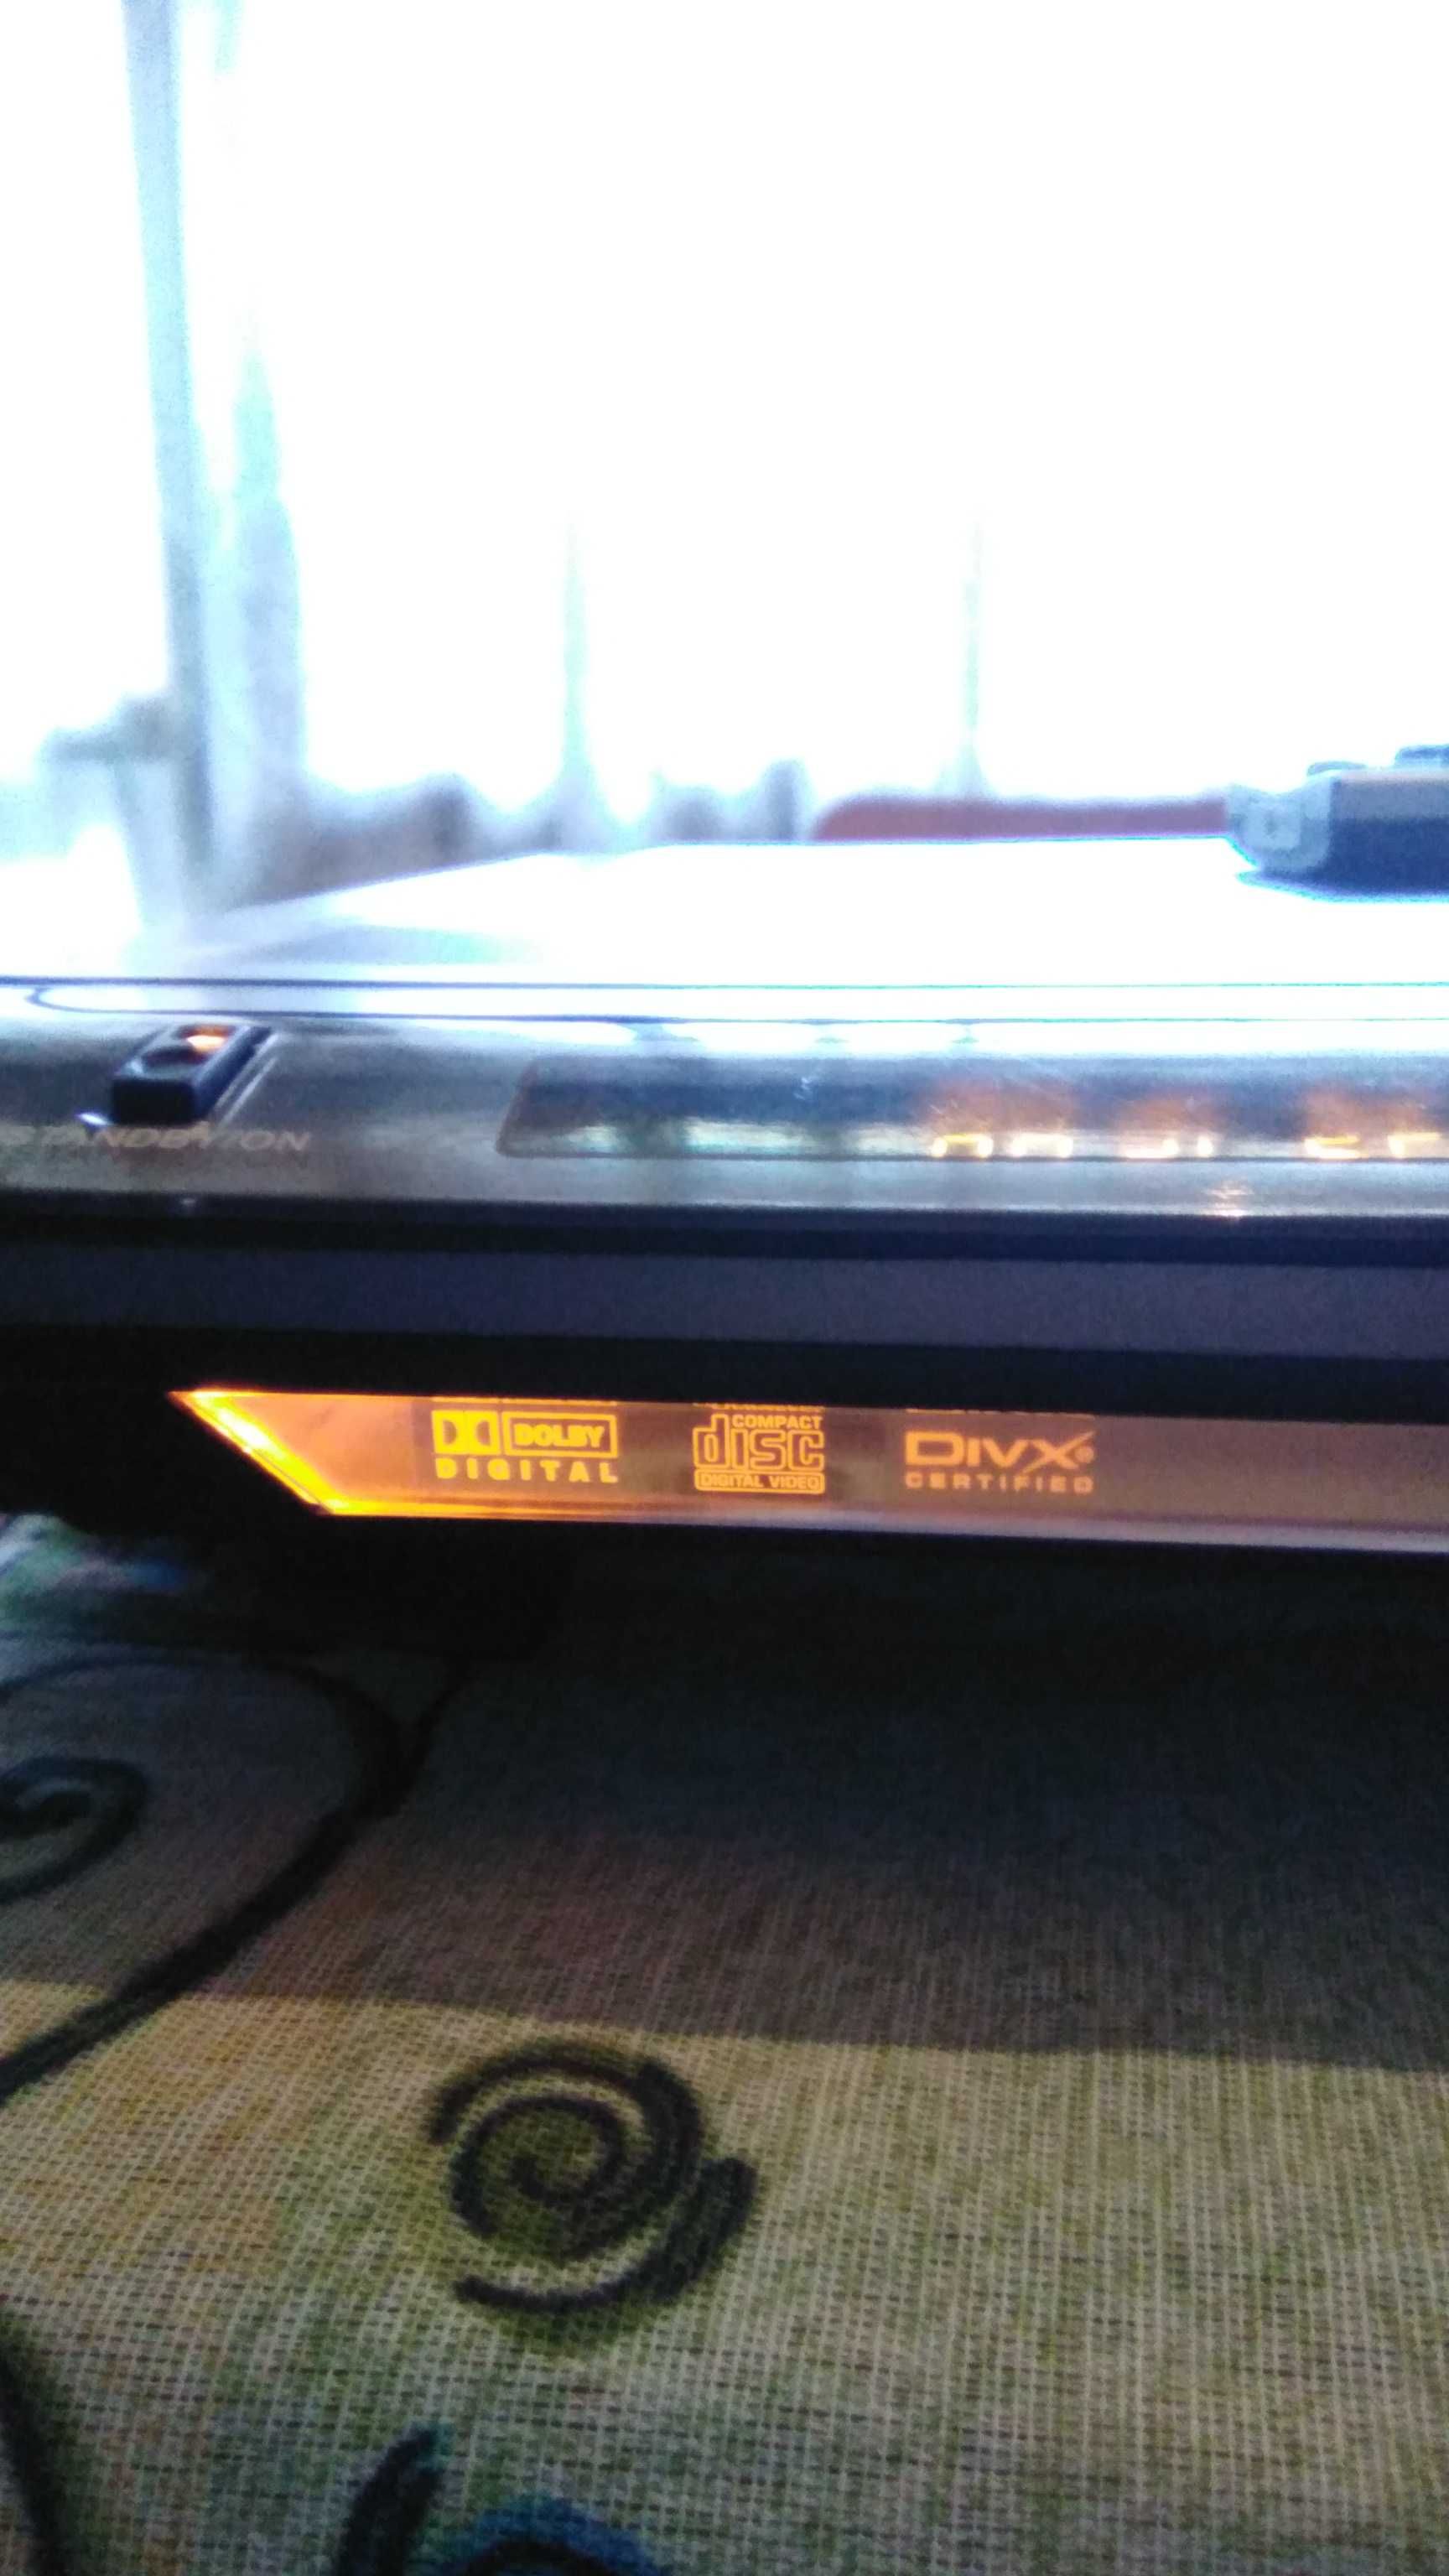 DVD neo PDX77 player